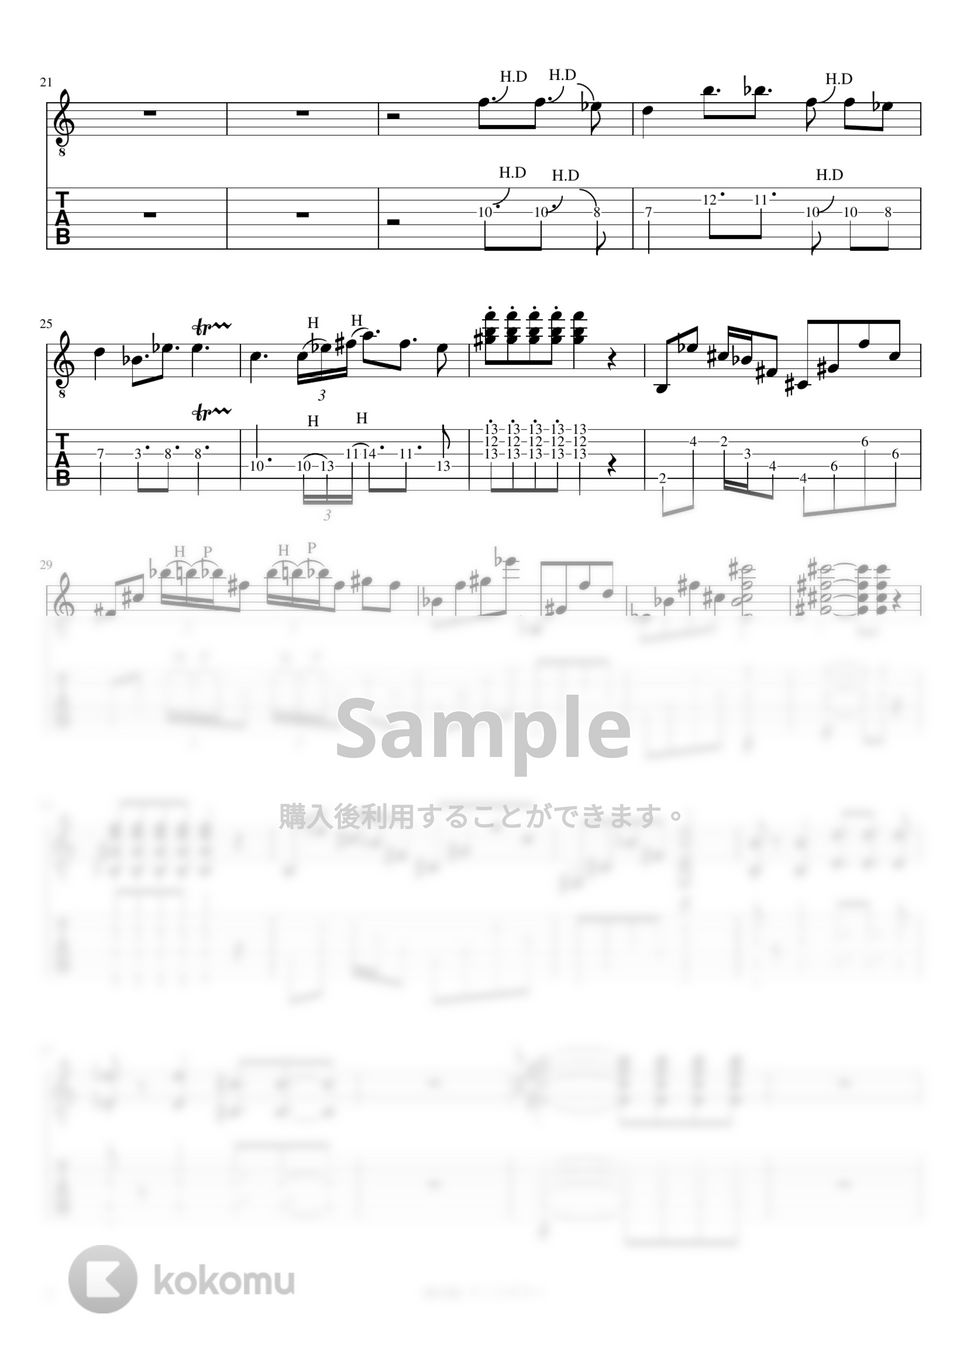 マカロニえんぴつ - MUSIC (リードギター) by J-ROCKチャンネル